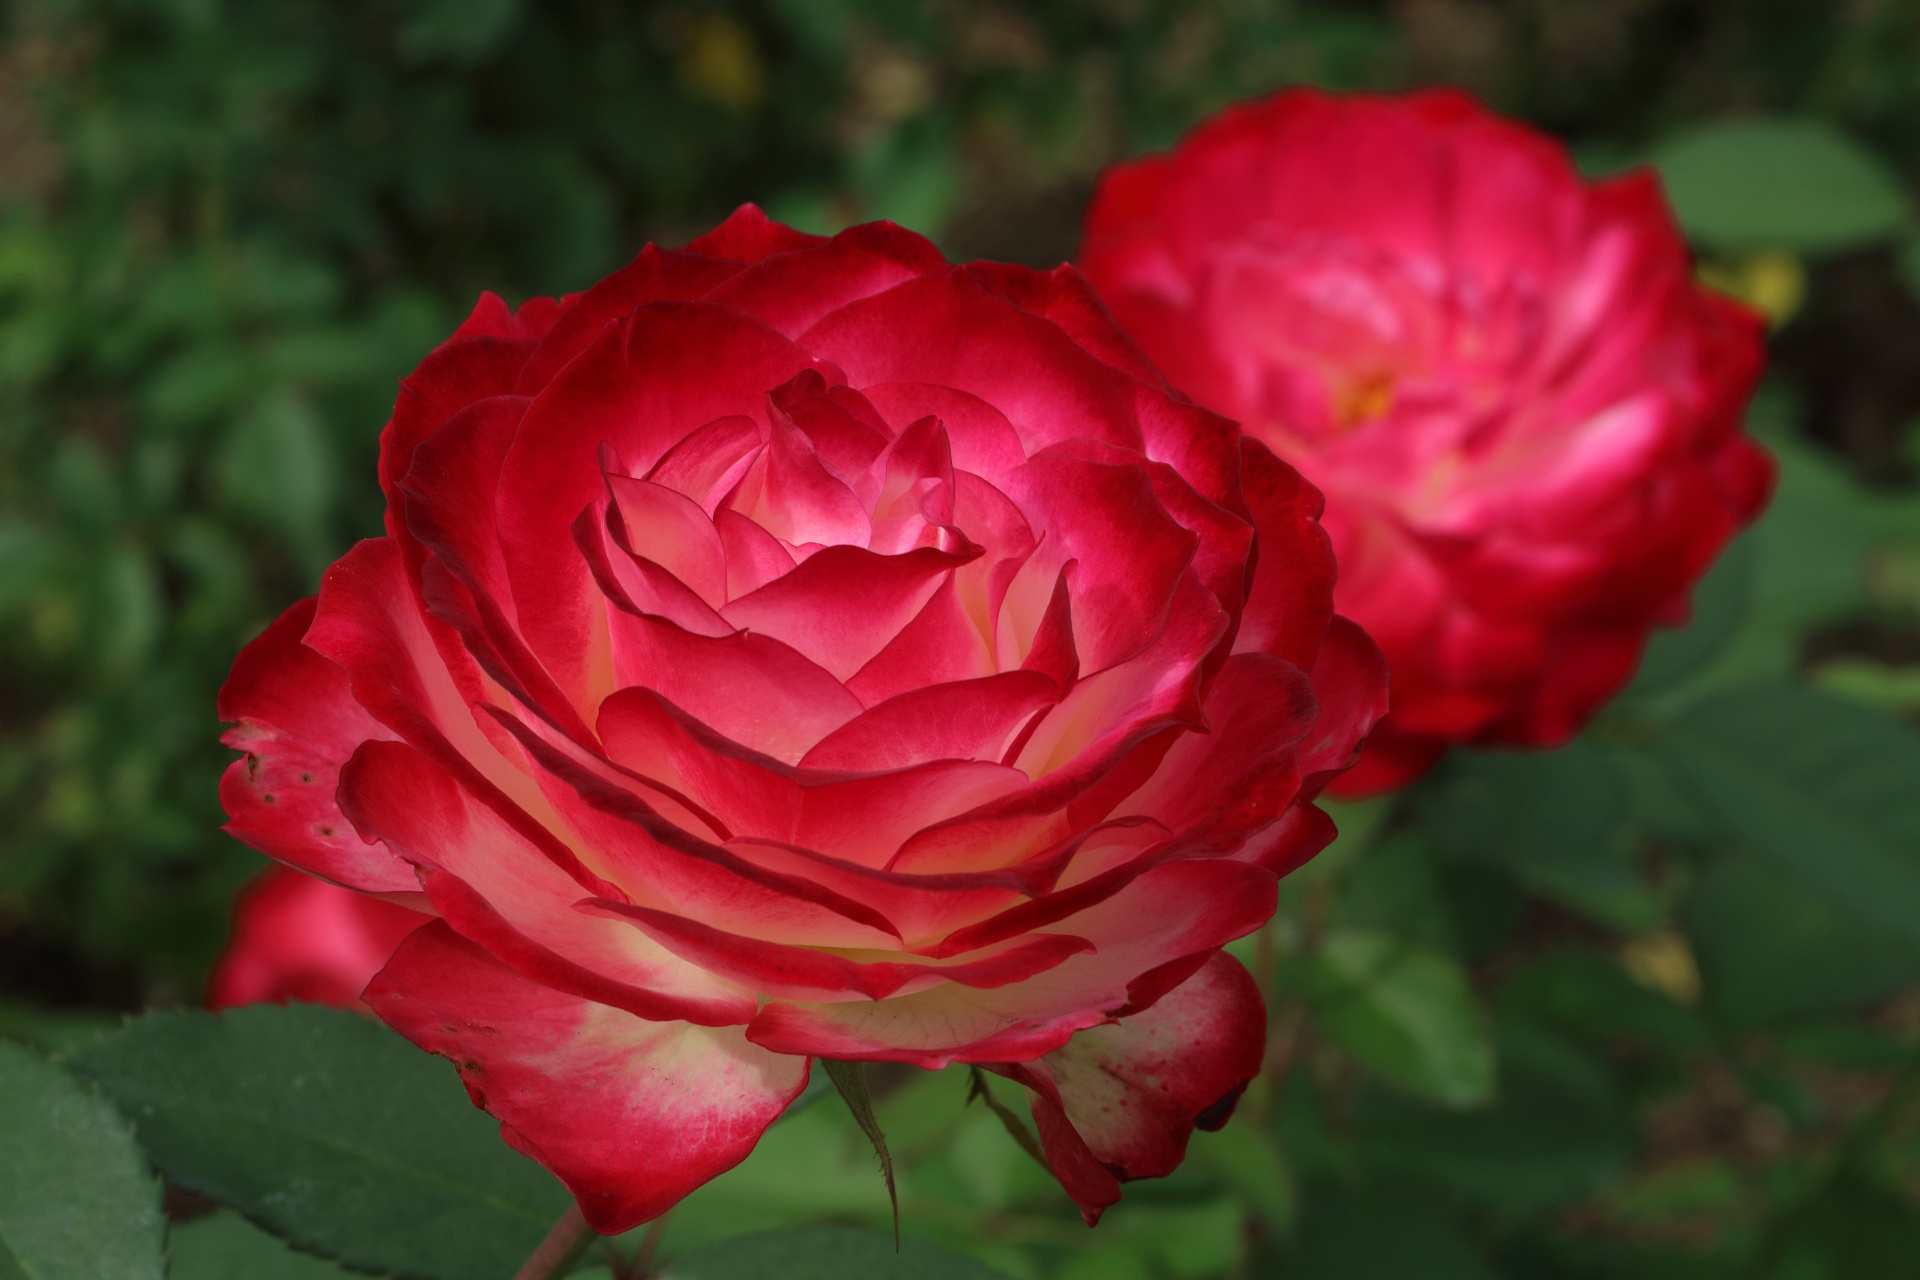 Скачать обои бесплатно Роза, Лепесток, Красная Роза, Красный Цветок, Земля/природа, Флауэрсы картинка на рабочий стол ПК